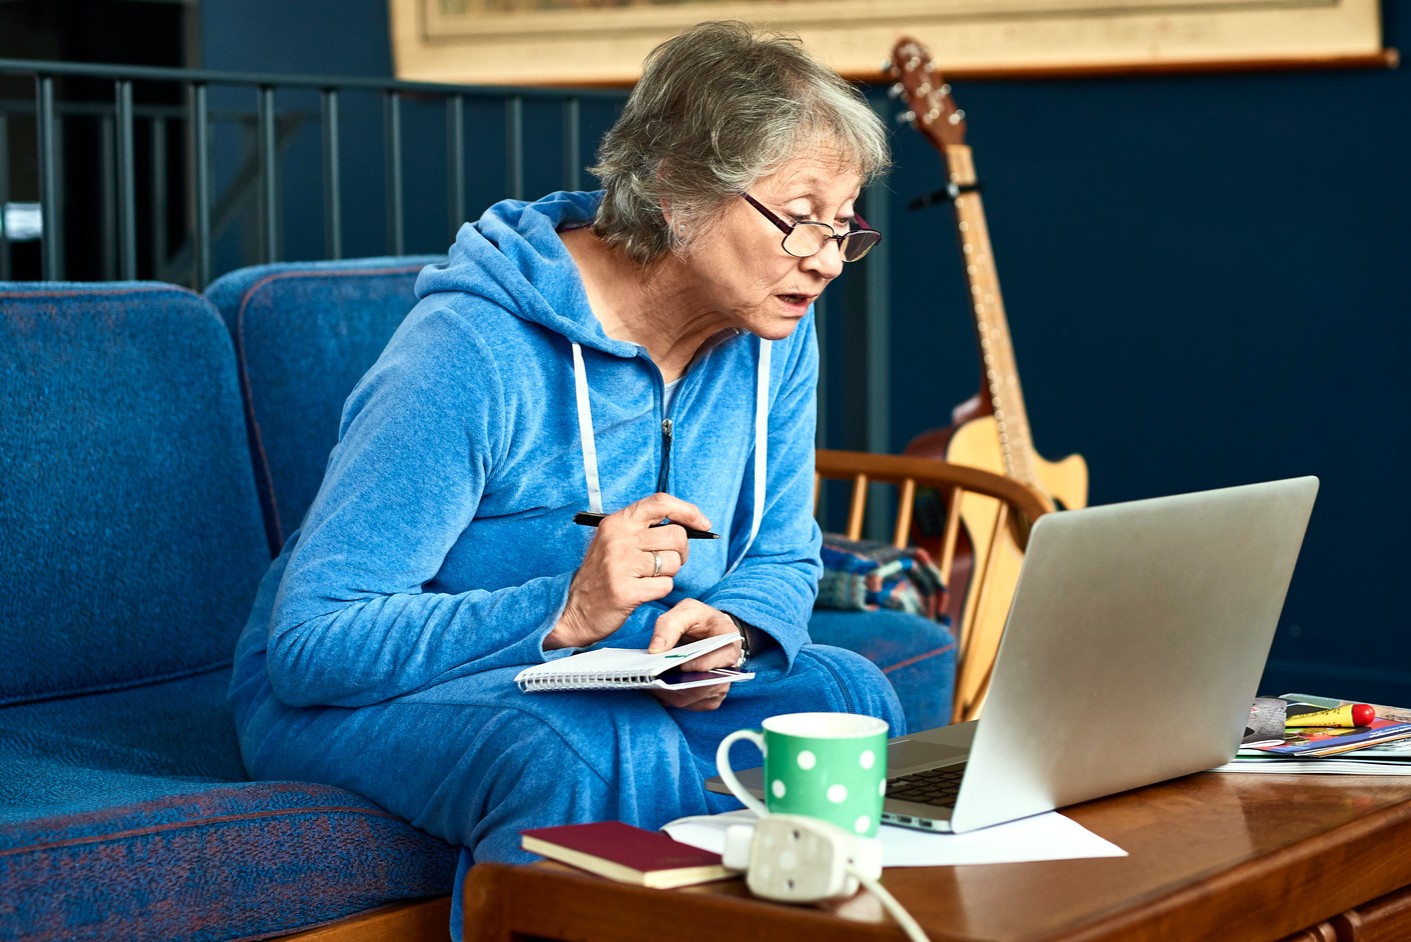 Читать пенсионер. Образование для пожилых. Пенсионеры. Пенсионерка в интернете. Гаджеты для пожилых.